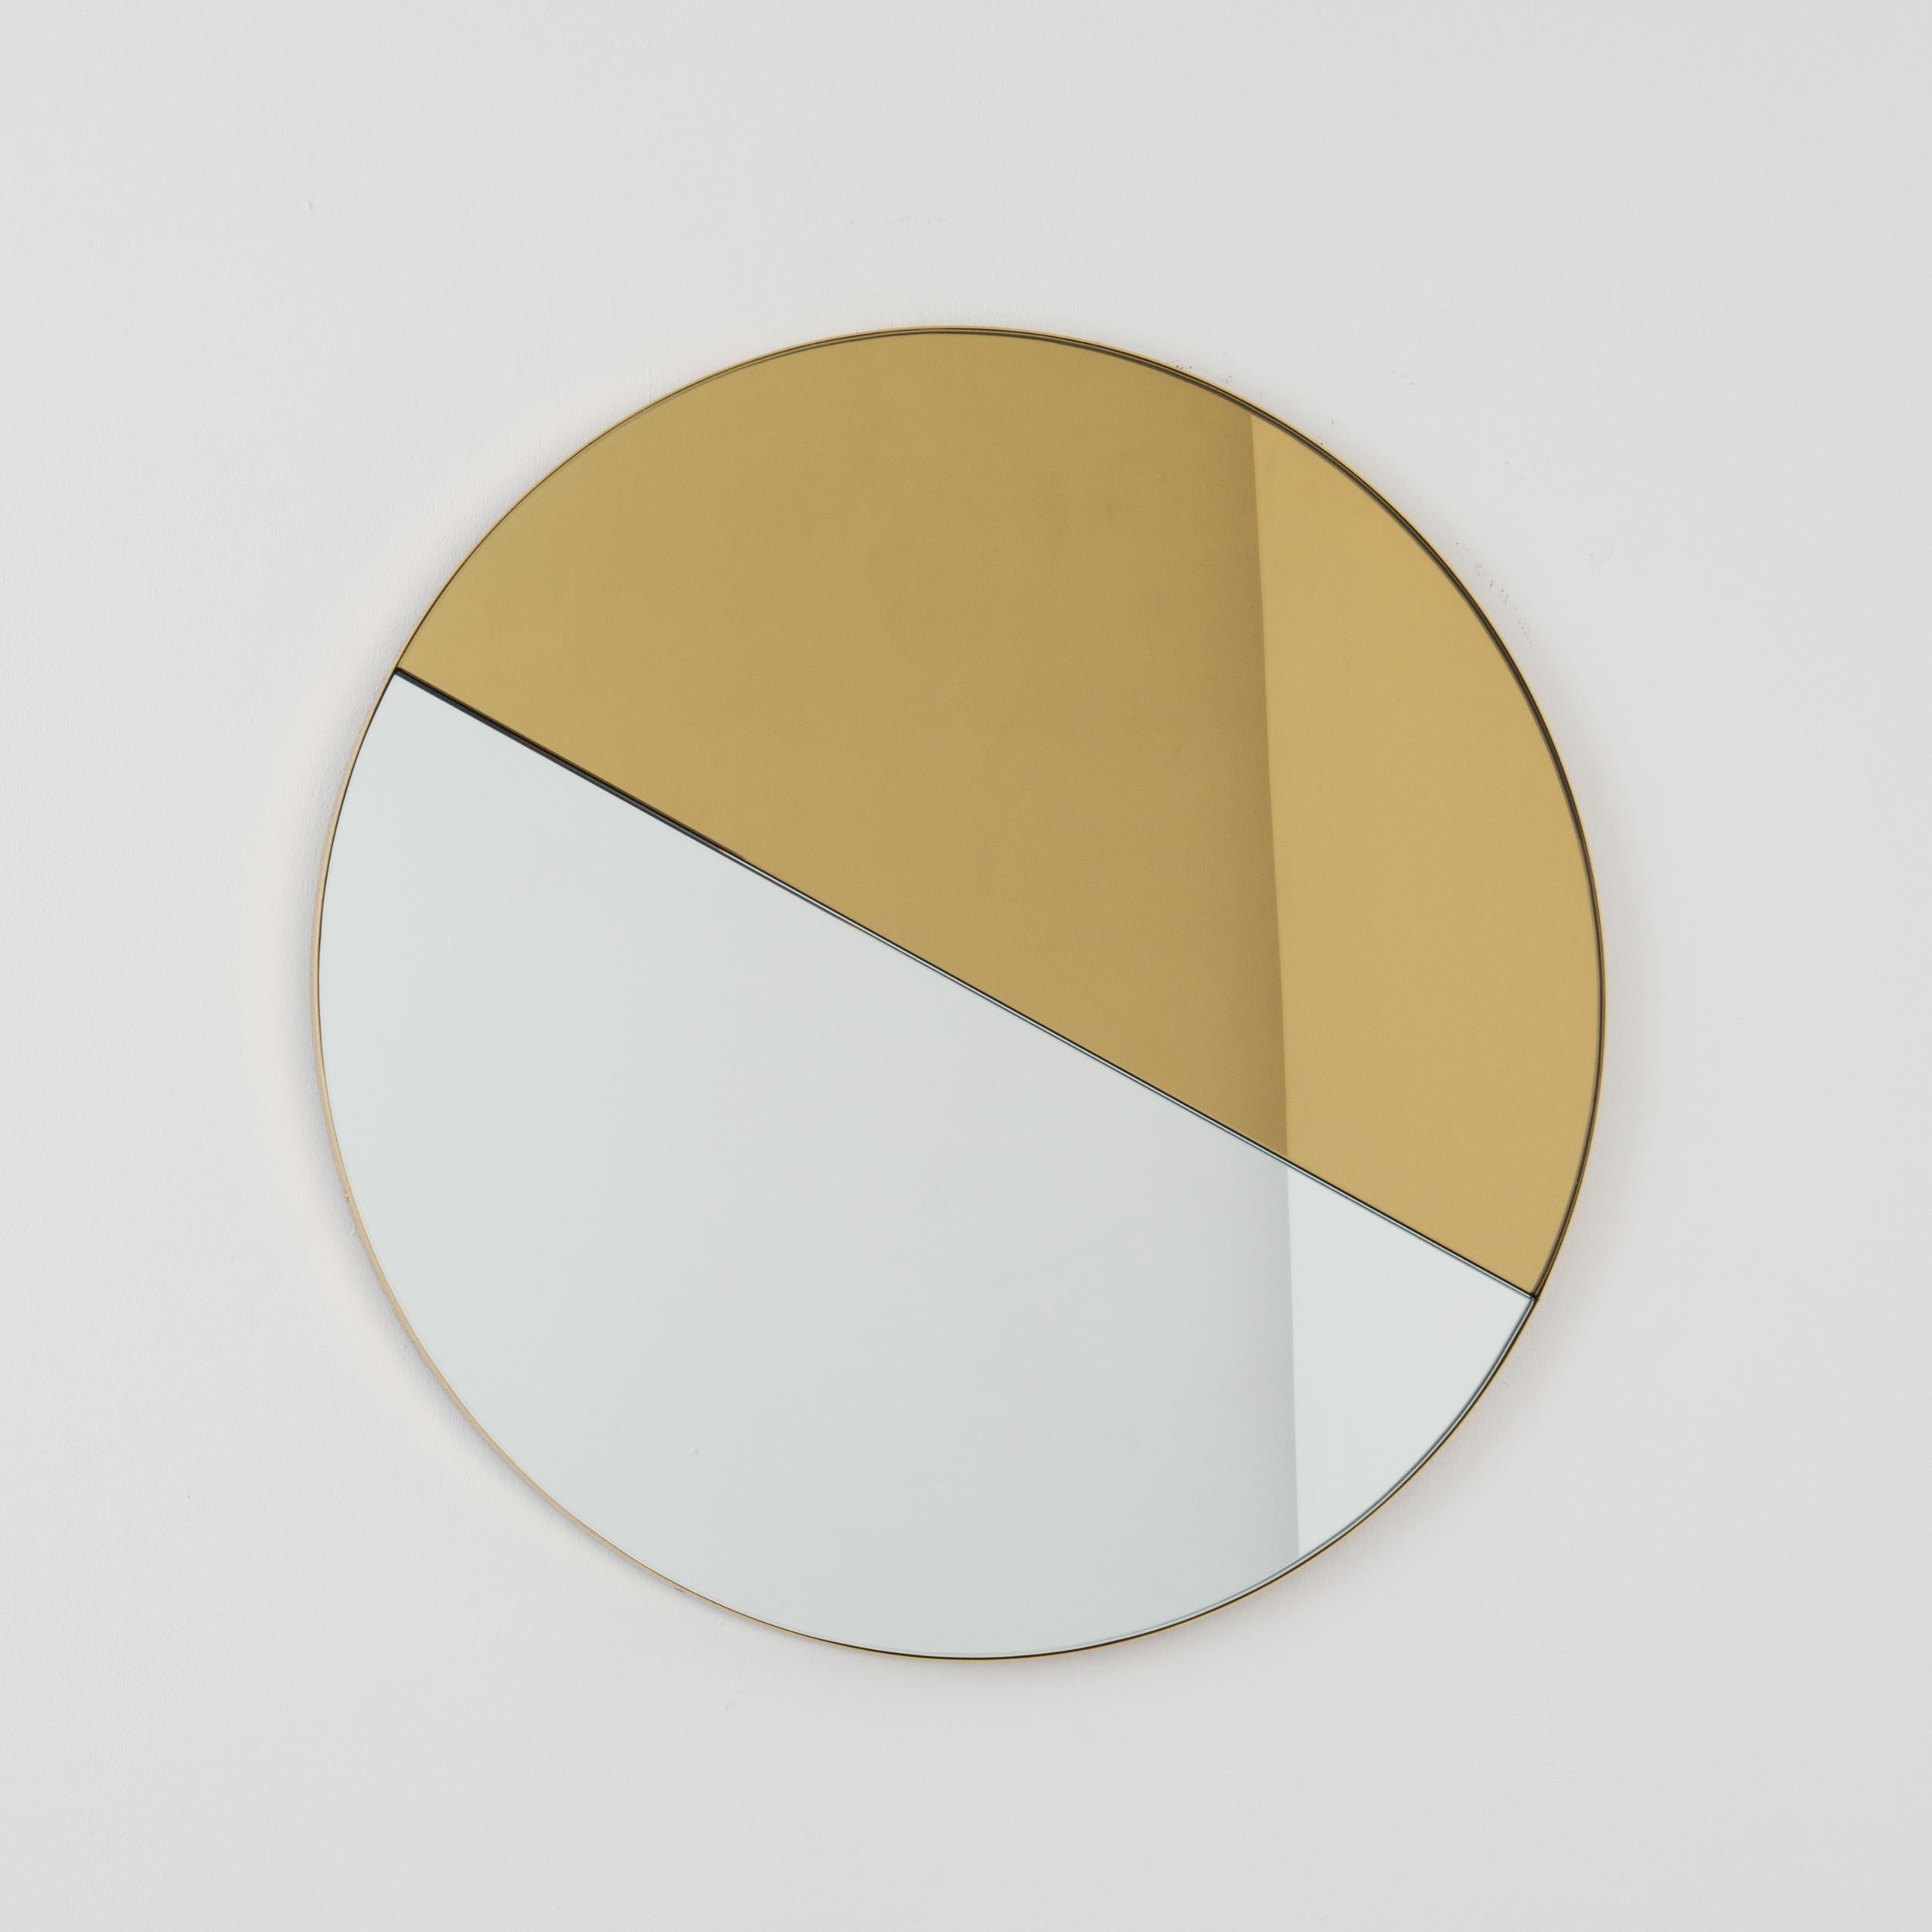 Miroir contemporain teinté mixte or et argent Orbis Dualis™ avec un élégant cadre en laiton massif brossé. Livré entièrement équipé d'un système d'accrochage spécialisé qui permet de suspendre le miroir dans quatre positions différentes. Conçu et